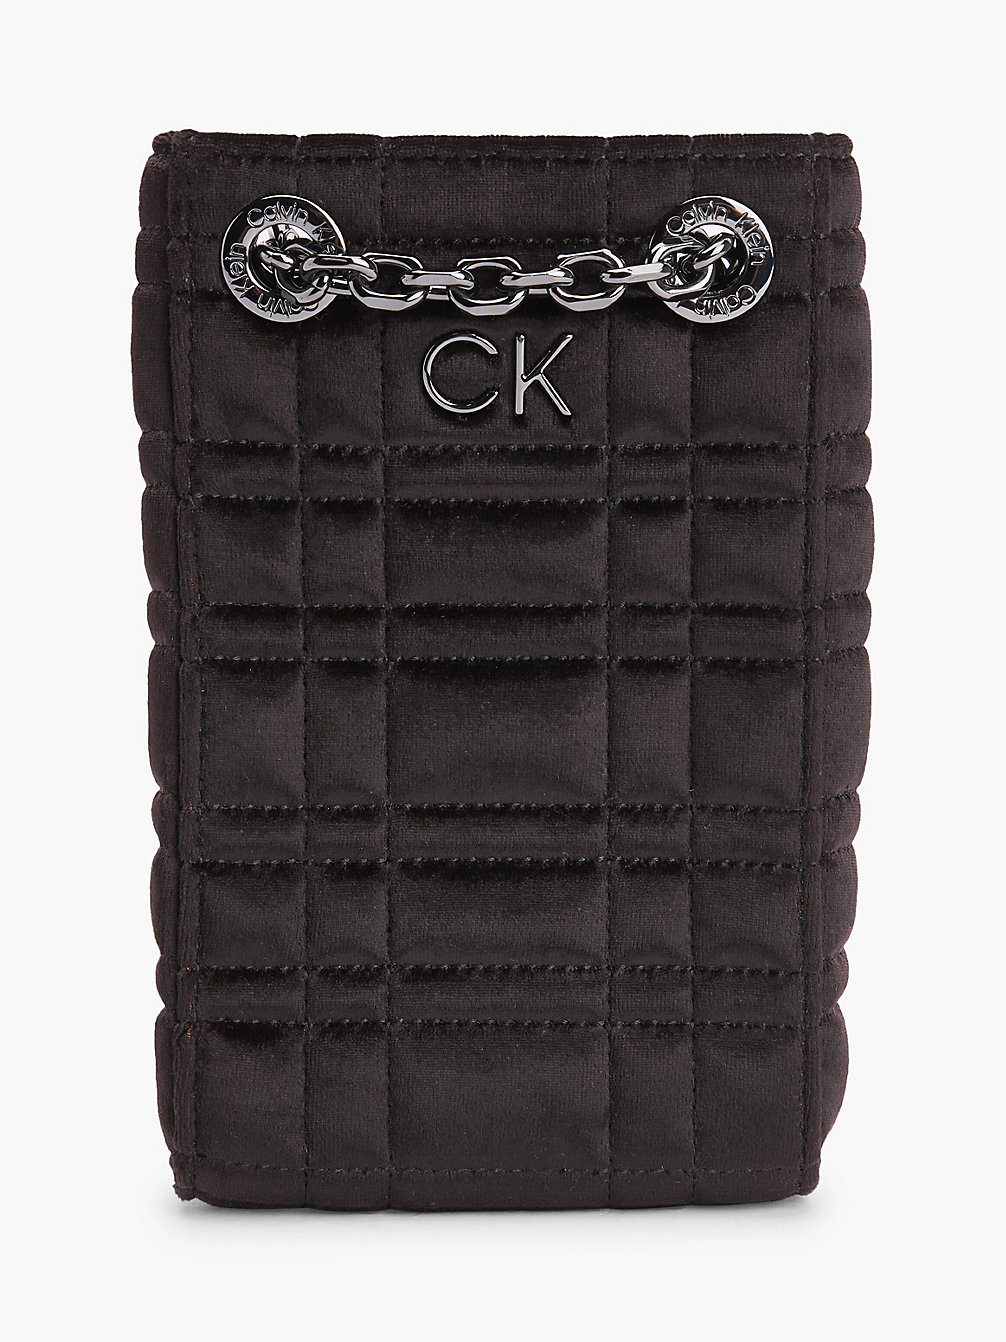 CK BLACK > Aksamitna Torba Na Telefon Z Materiałów Z Recyklingu > undefined Kobiety - Calvin Klein